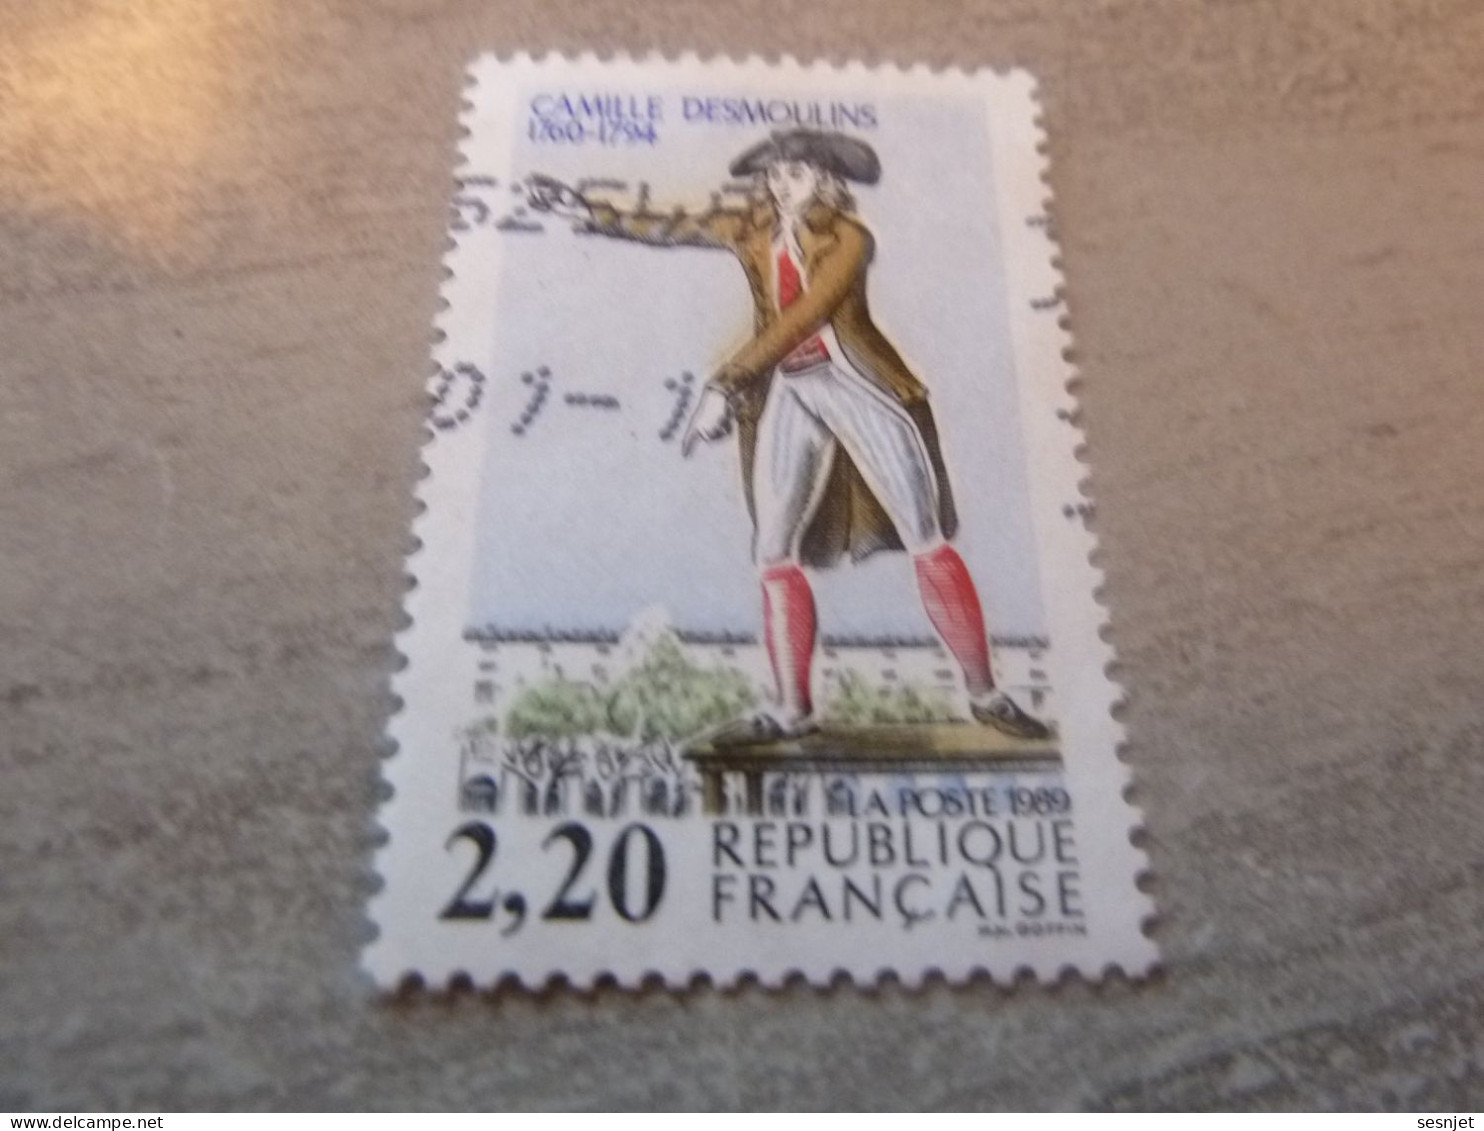 Camille Desmoulins (1760-1794) Avocat Et Journaliste - 2f.20 - Yt 2594 - Multicolore - Oblitéré - Année 1989 - - Usados